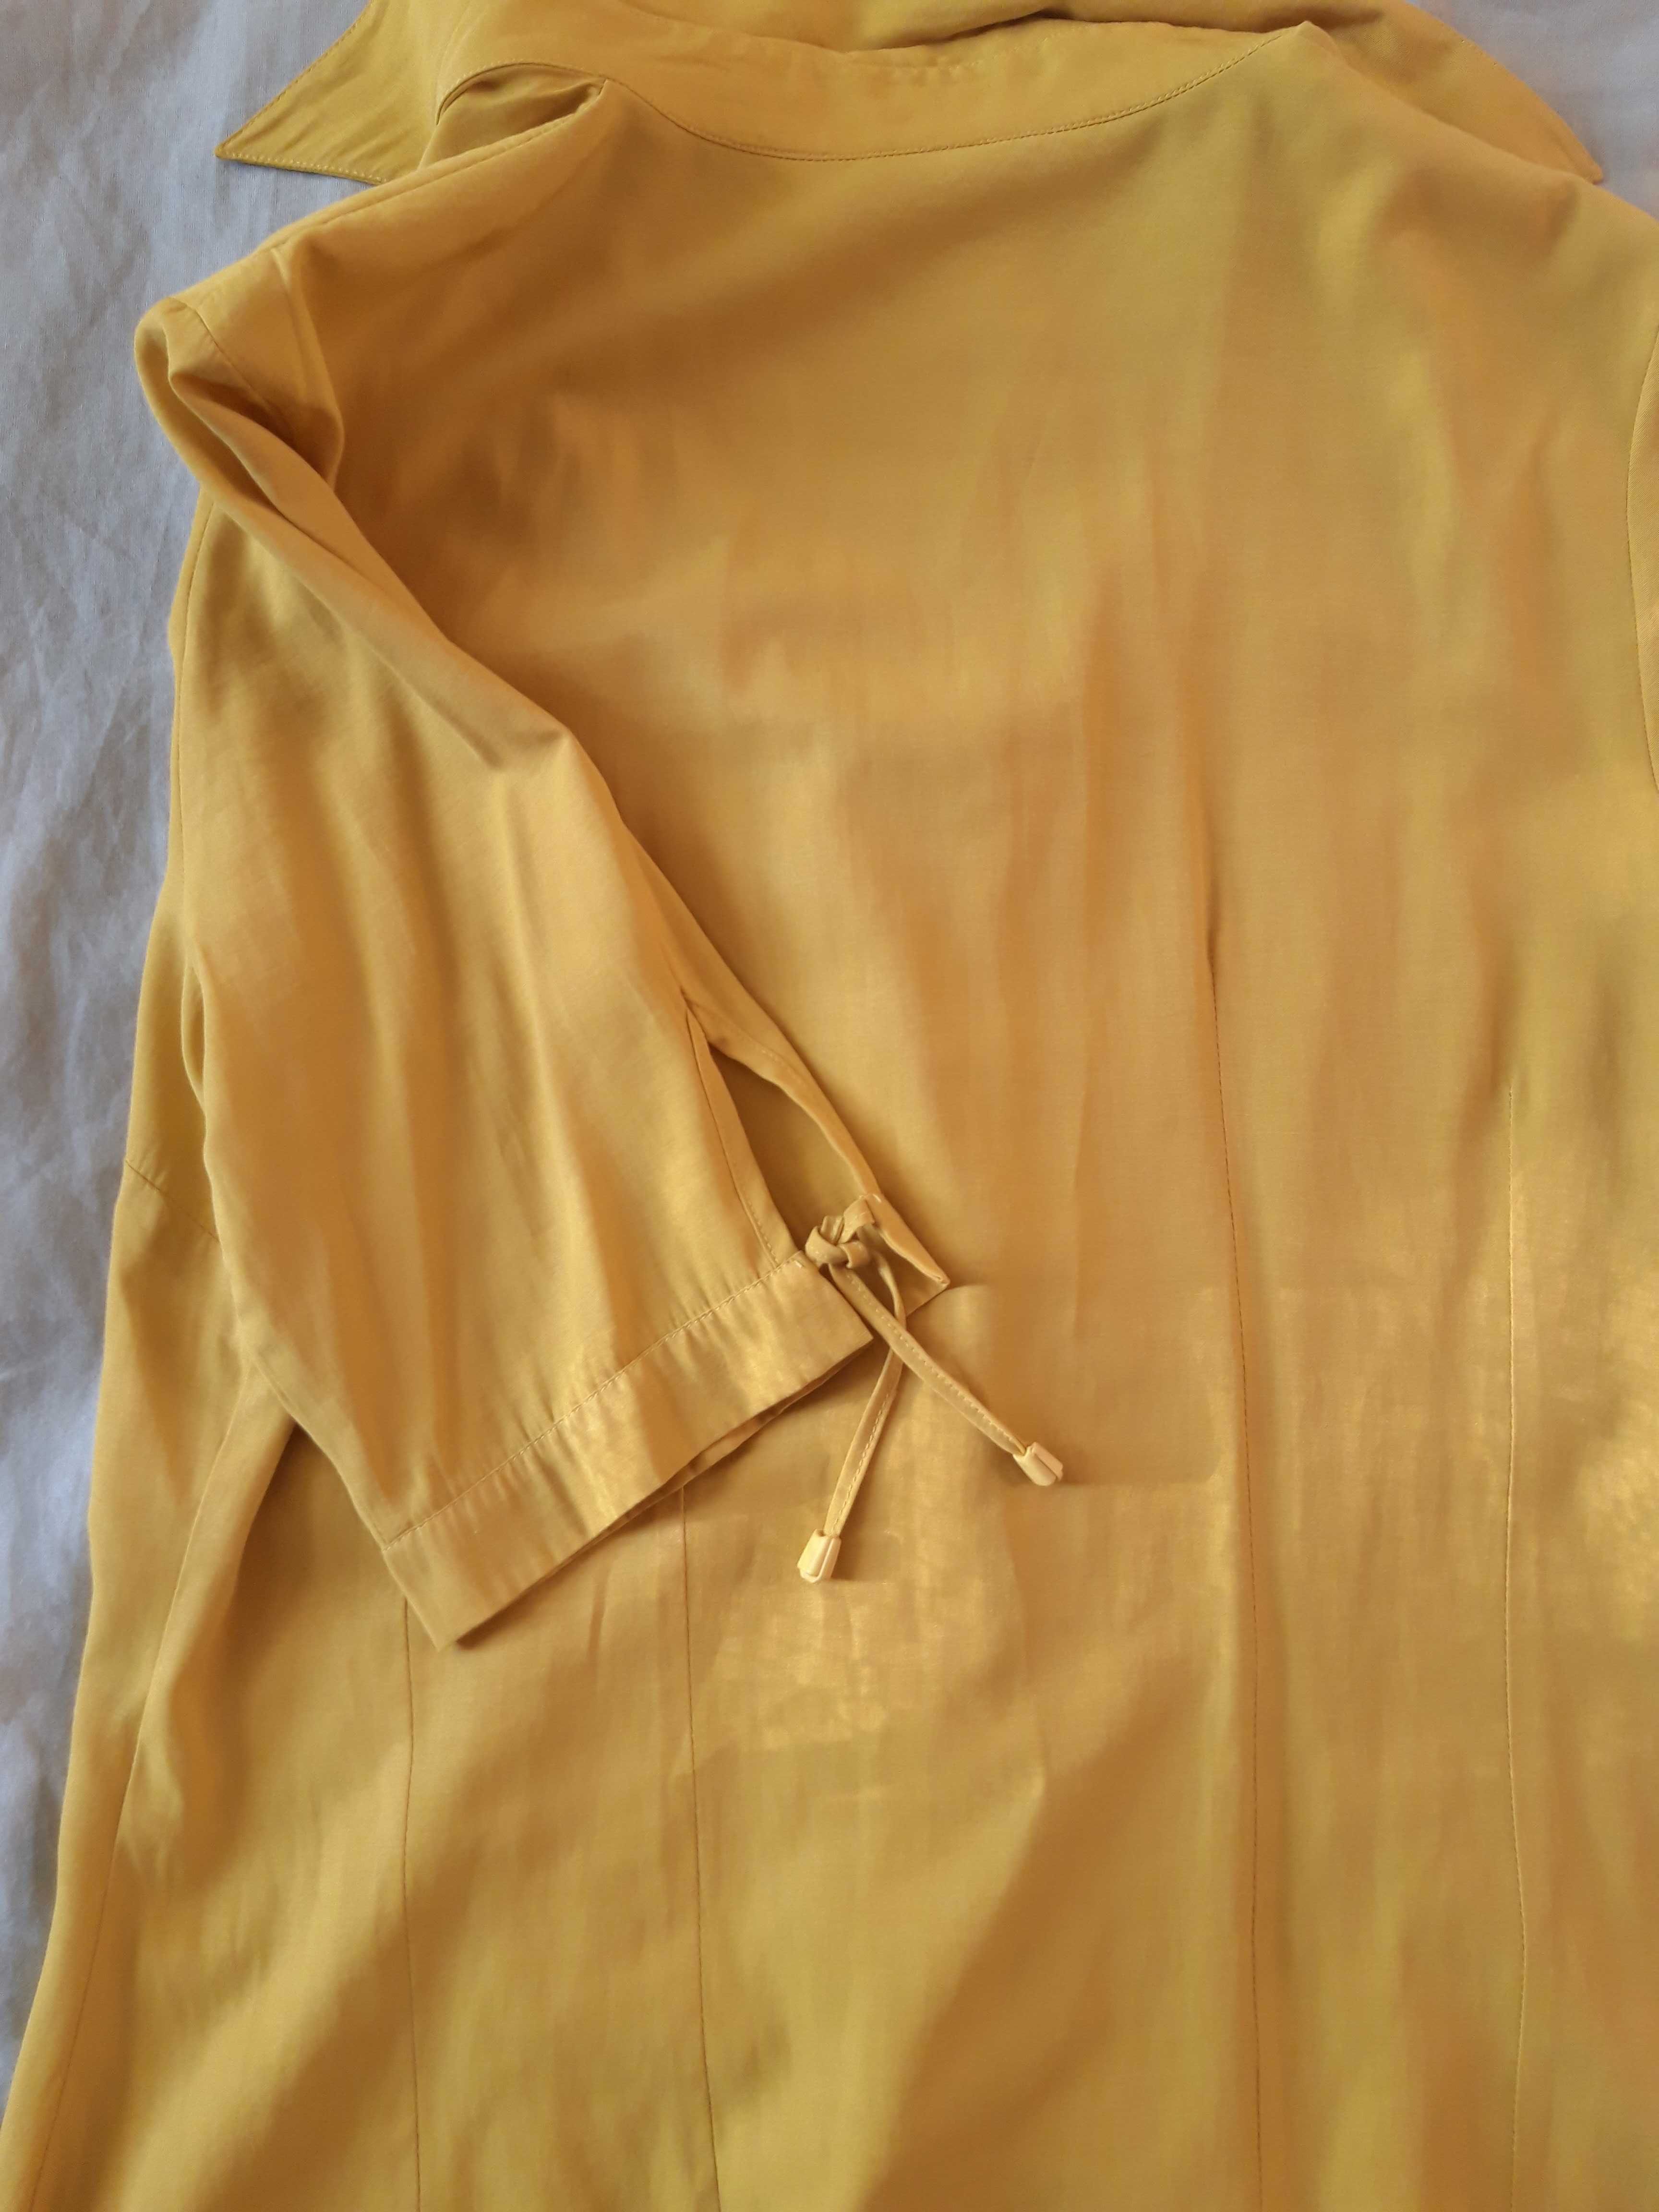 Женская блуза горчичного цвета, очень легкая, летняя